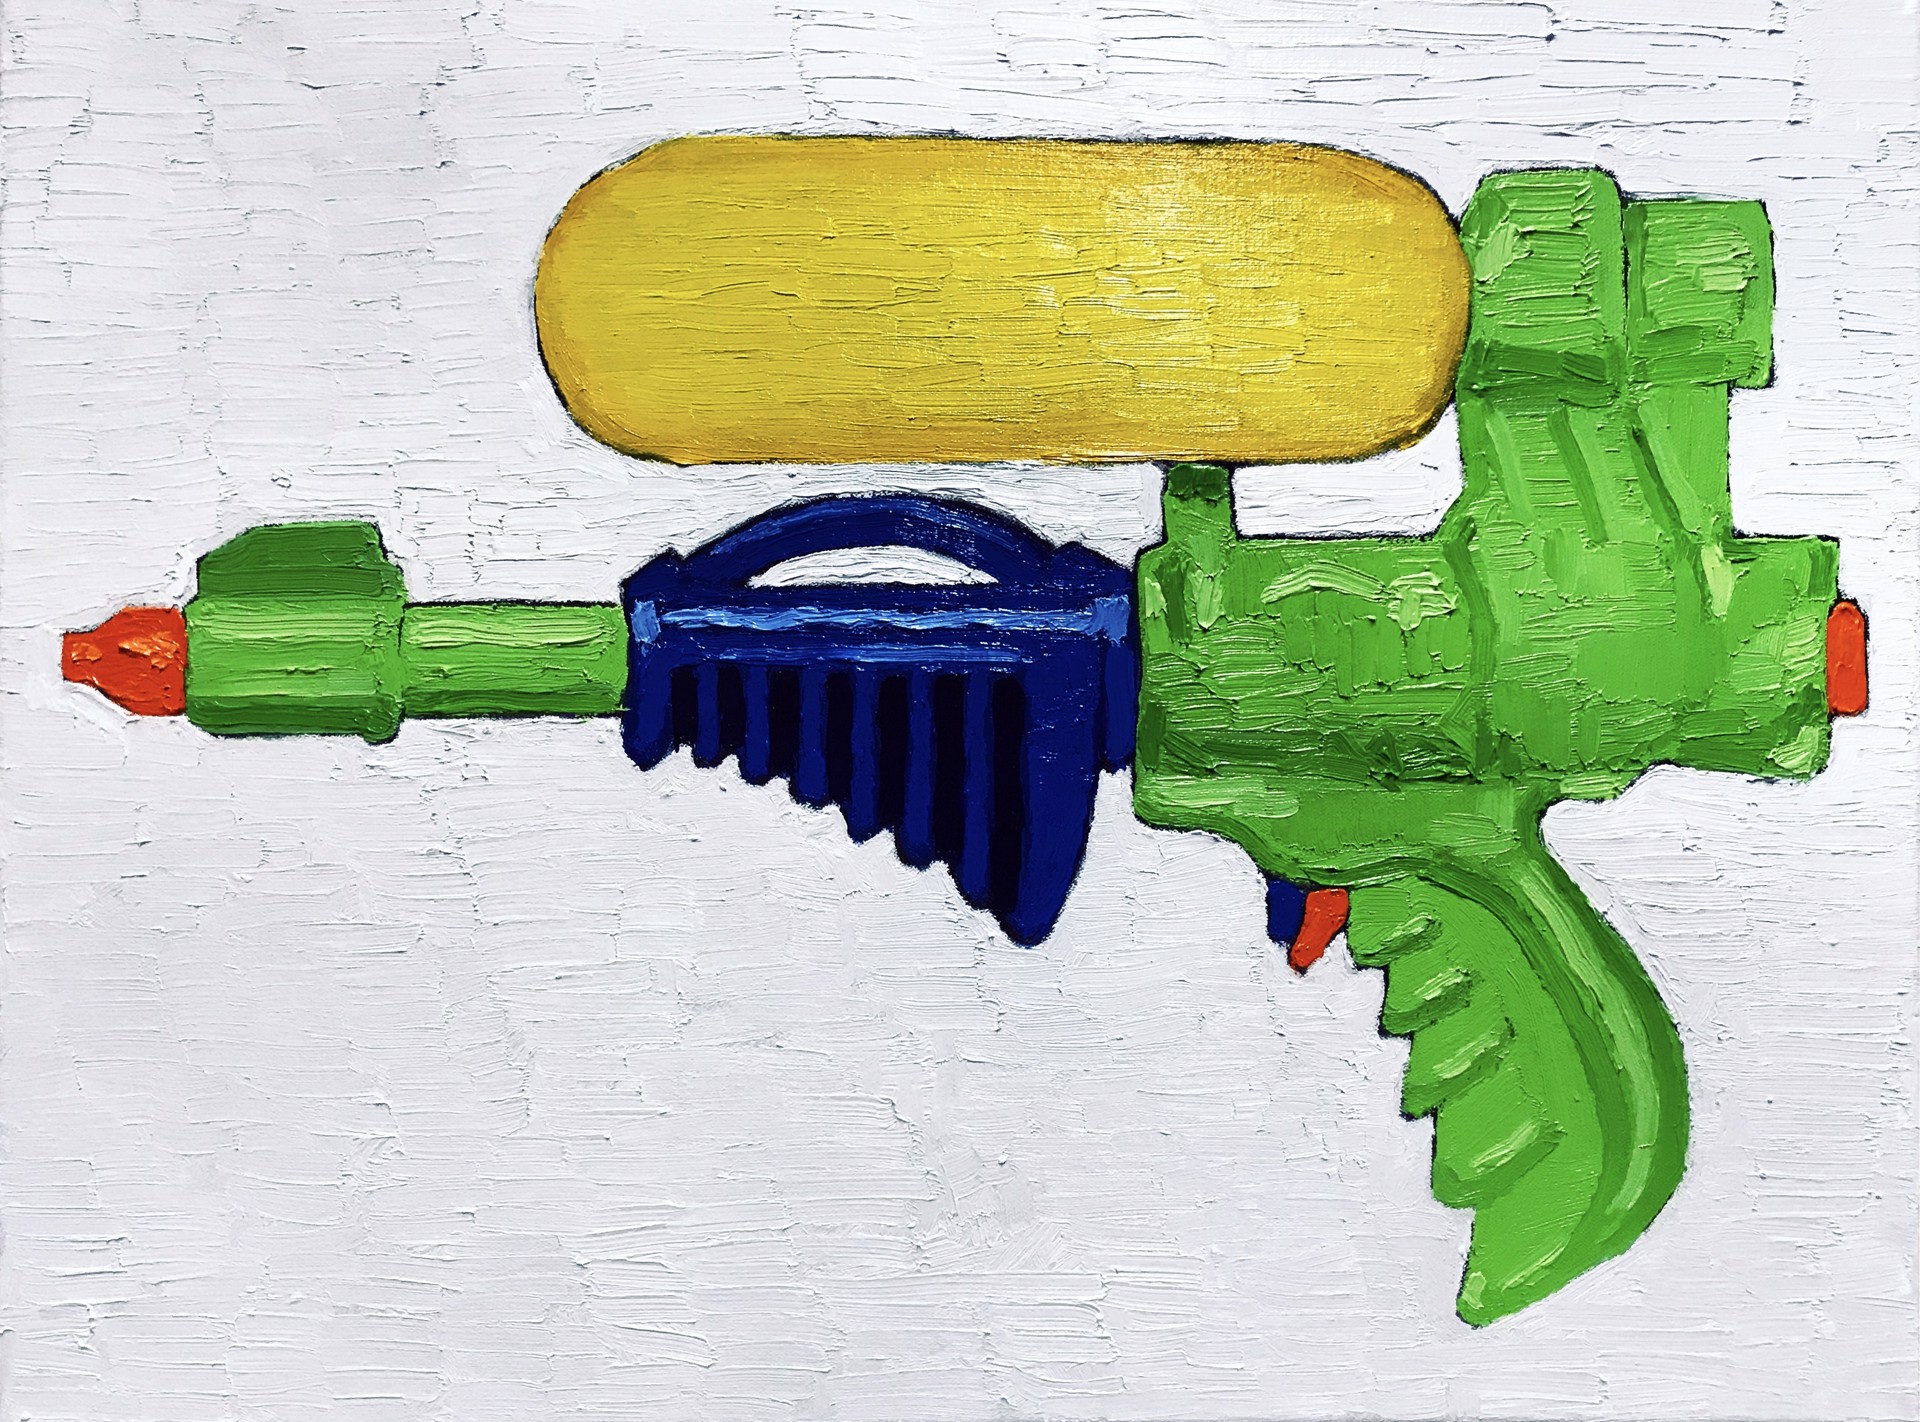 Green Gun by Chris Harsch